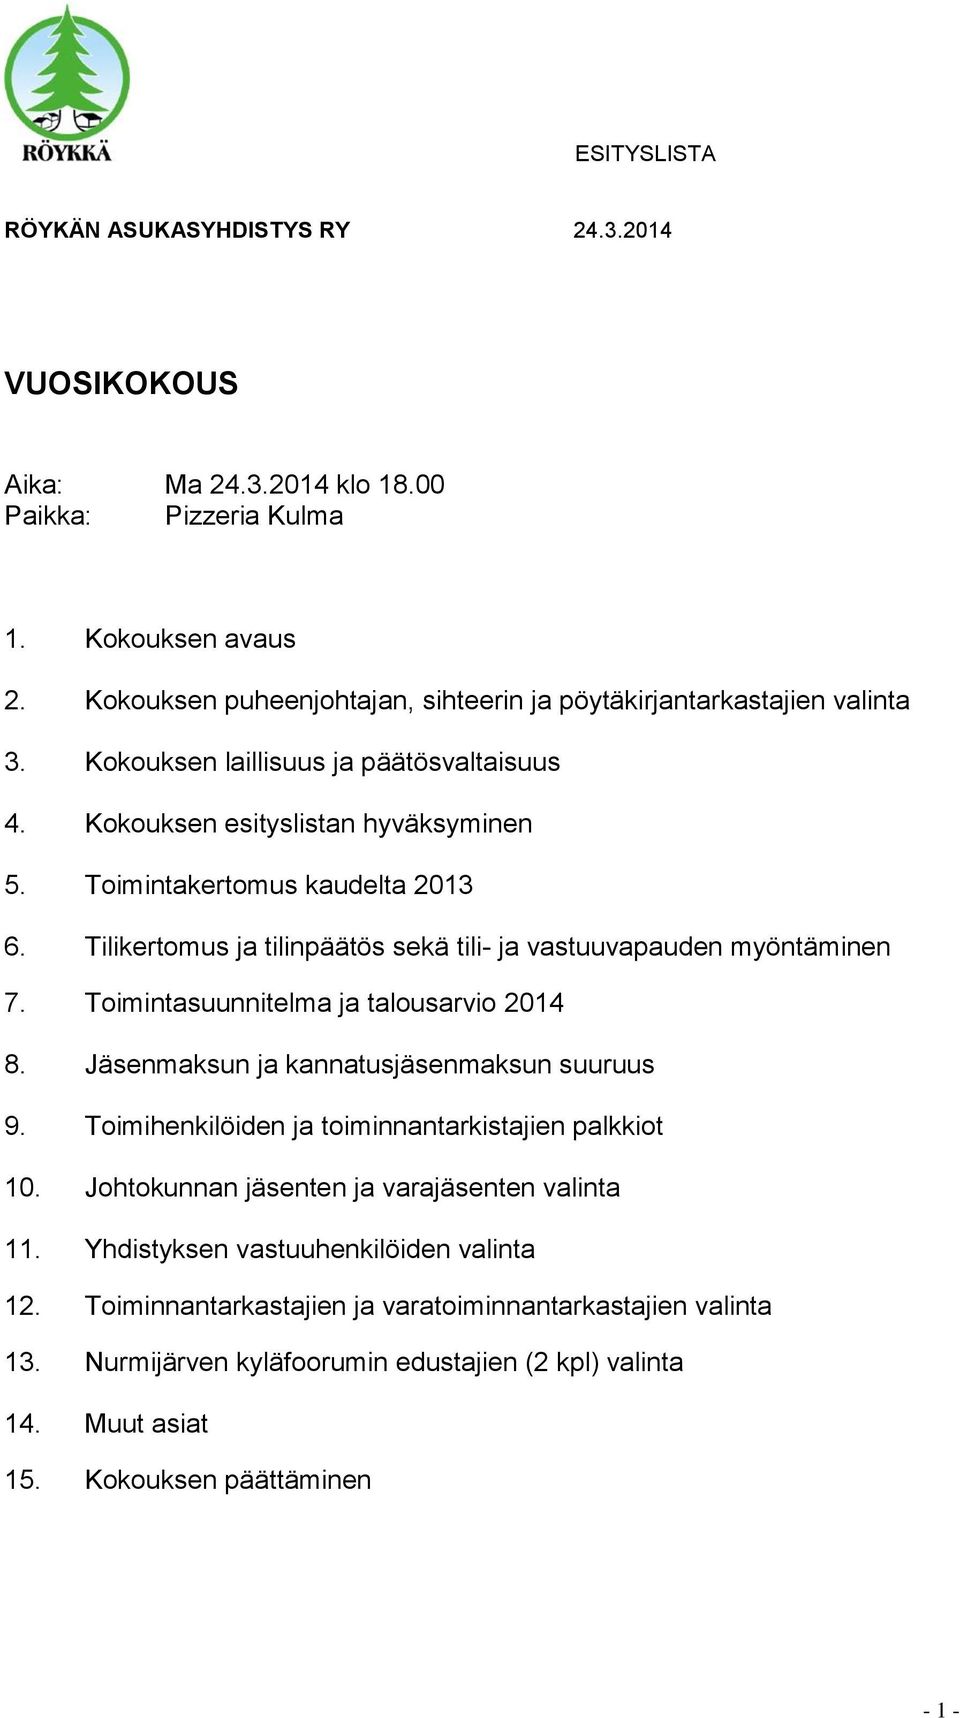 Tilikertomus ja tilinpäätös sekä tili- ja vastuuvapauden myöntäminen 7. Toimintasuunnitelma ja talousarvio 2014 8. Jäsenmaksun ja kannatusjäsenmaksun suuruus 9.